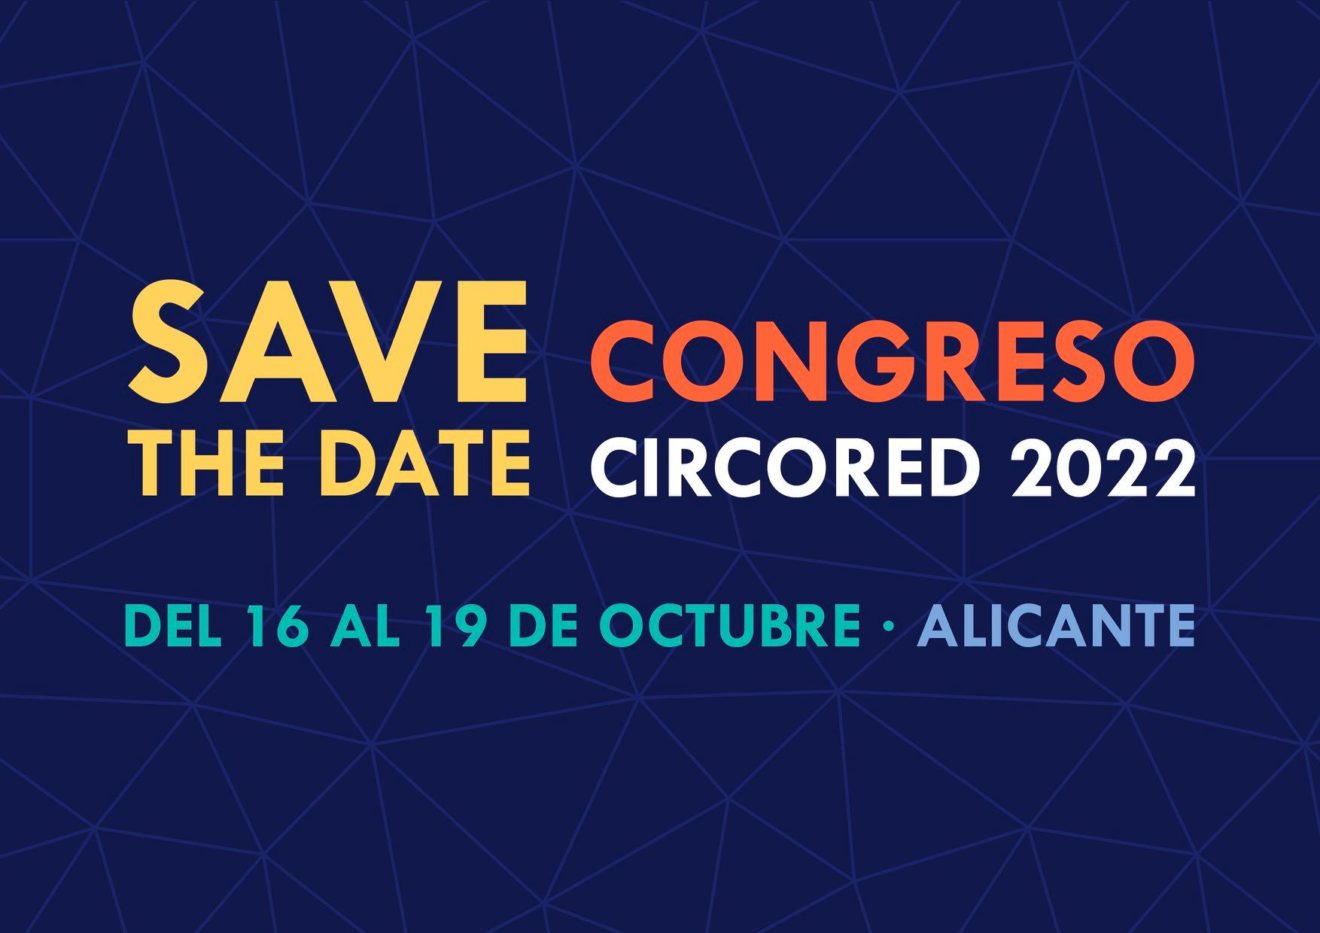 El Festival Circarte y el VI Congreso CircoRED sucederán a la par éste 2022